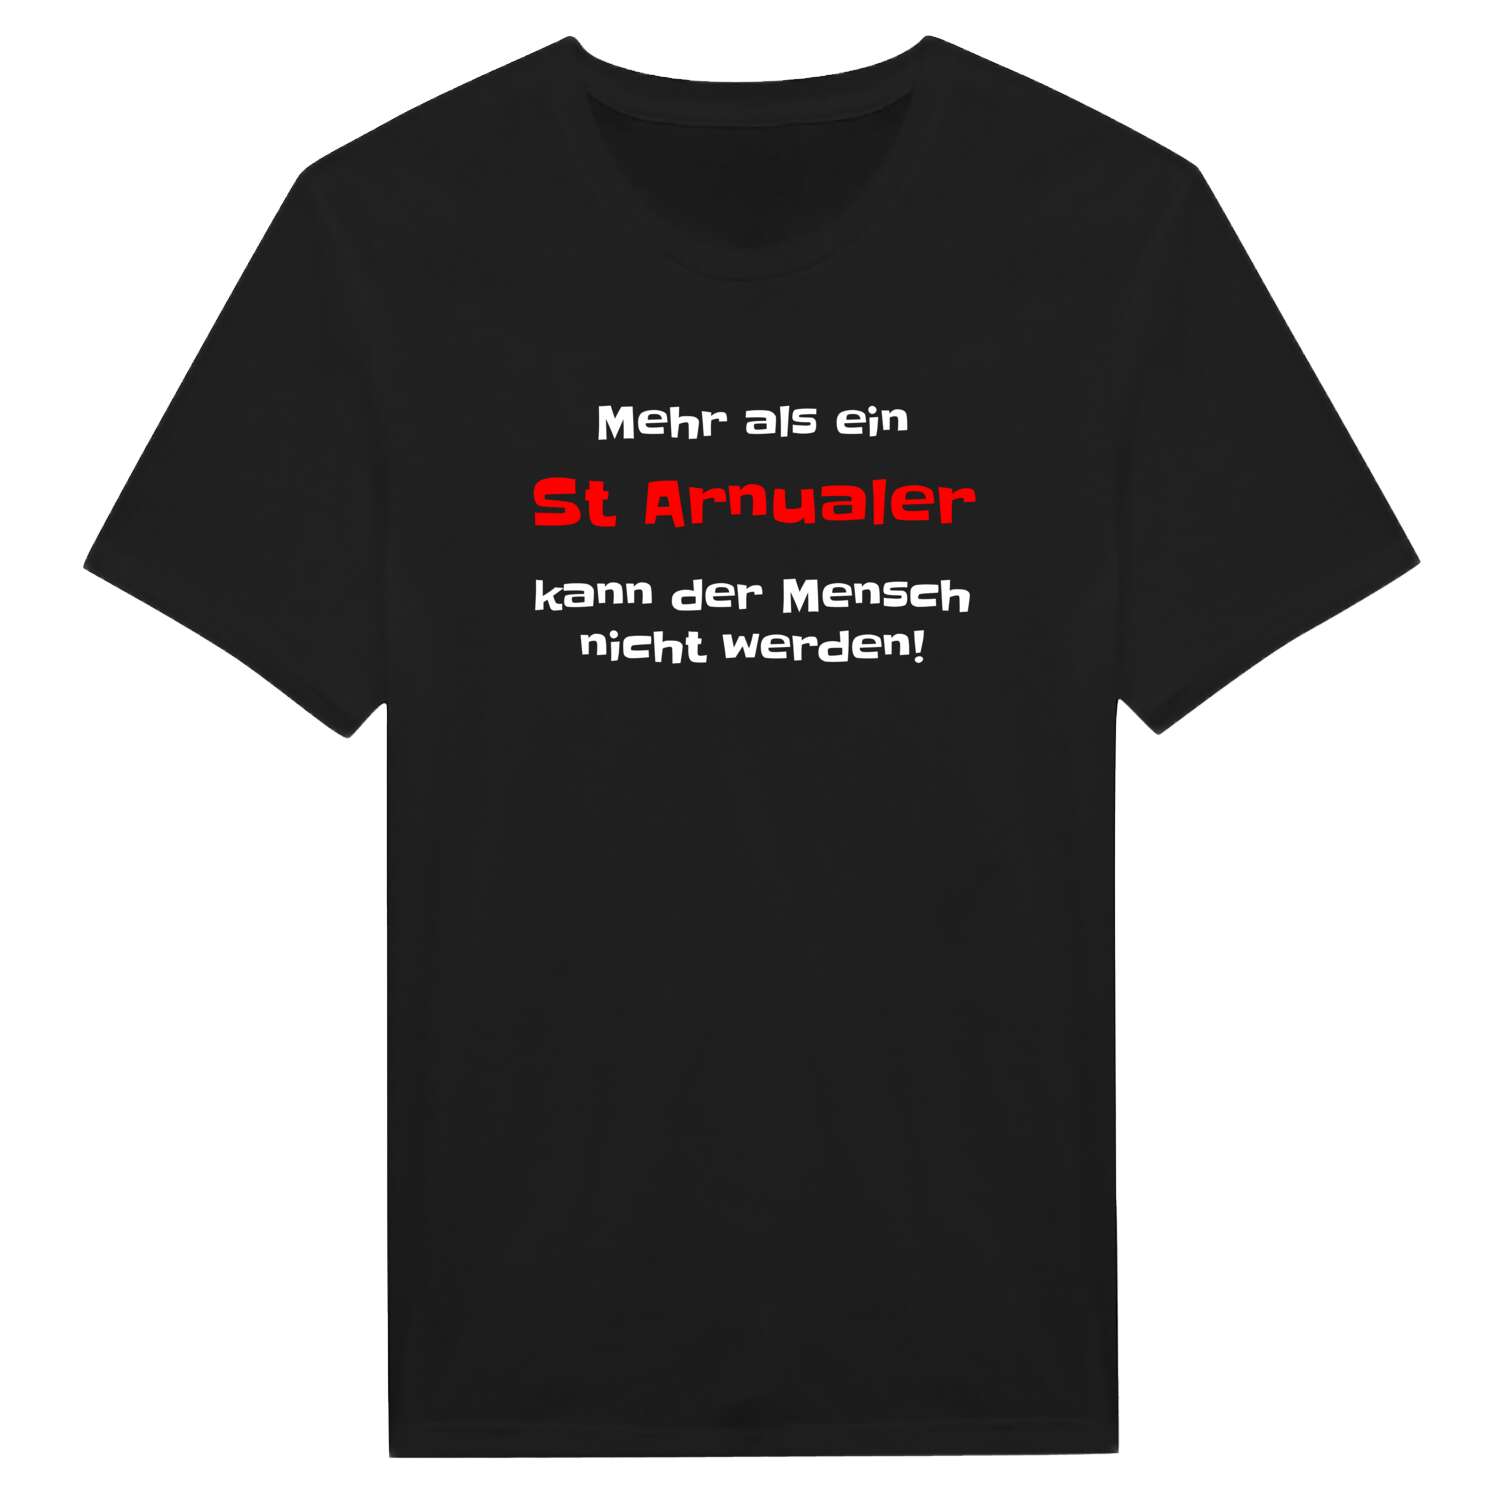 St Arnual T-Shirt »Mehr als ein«